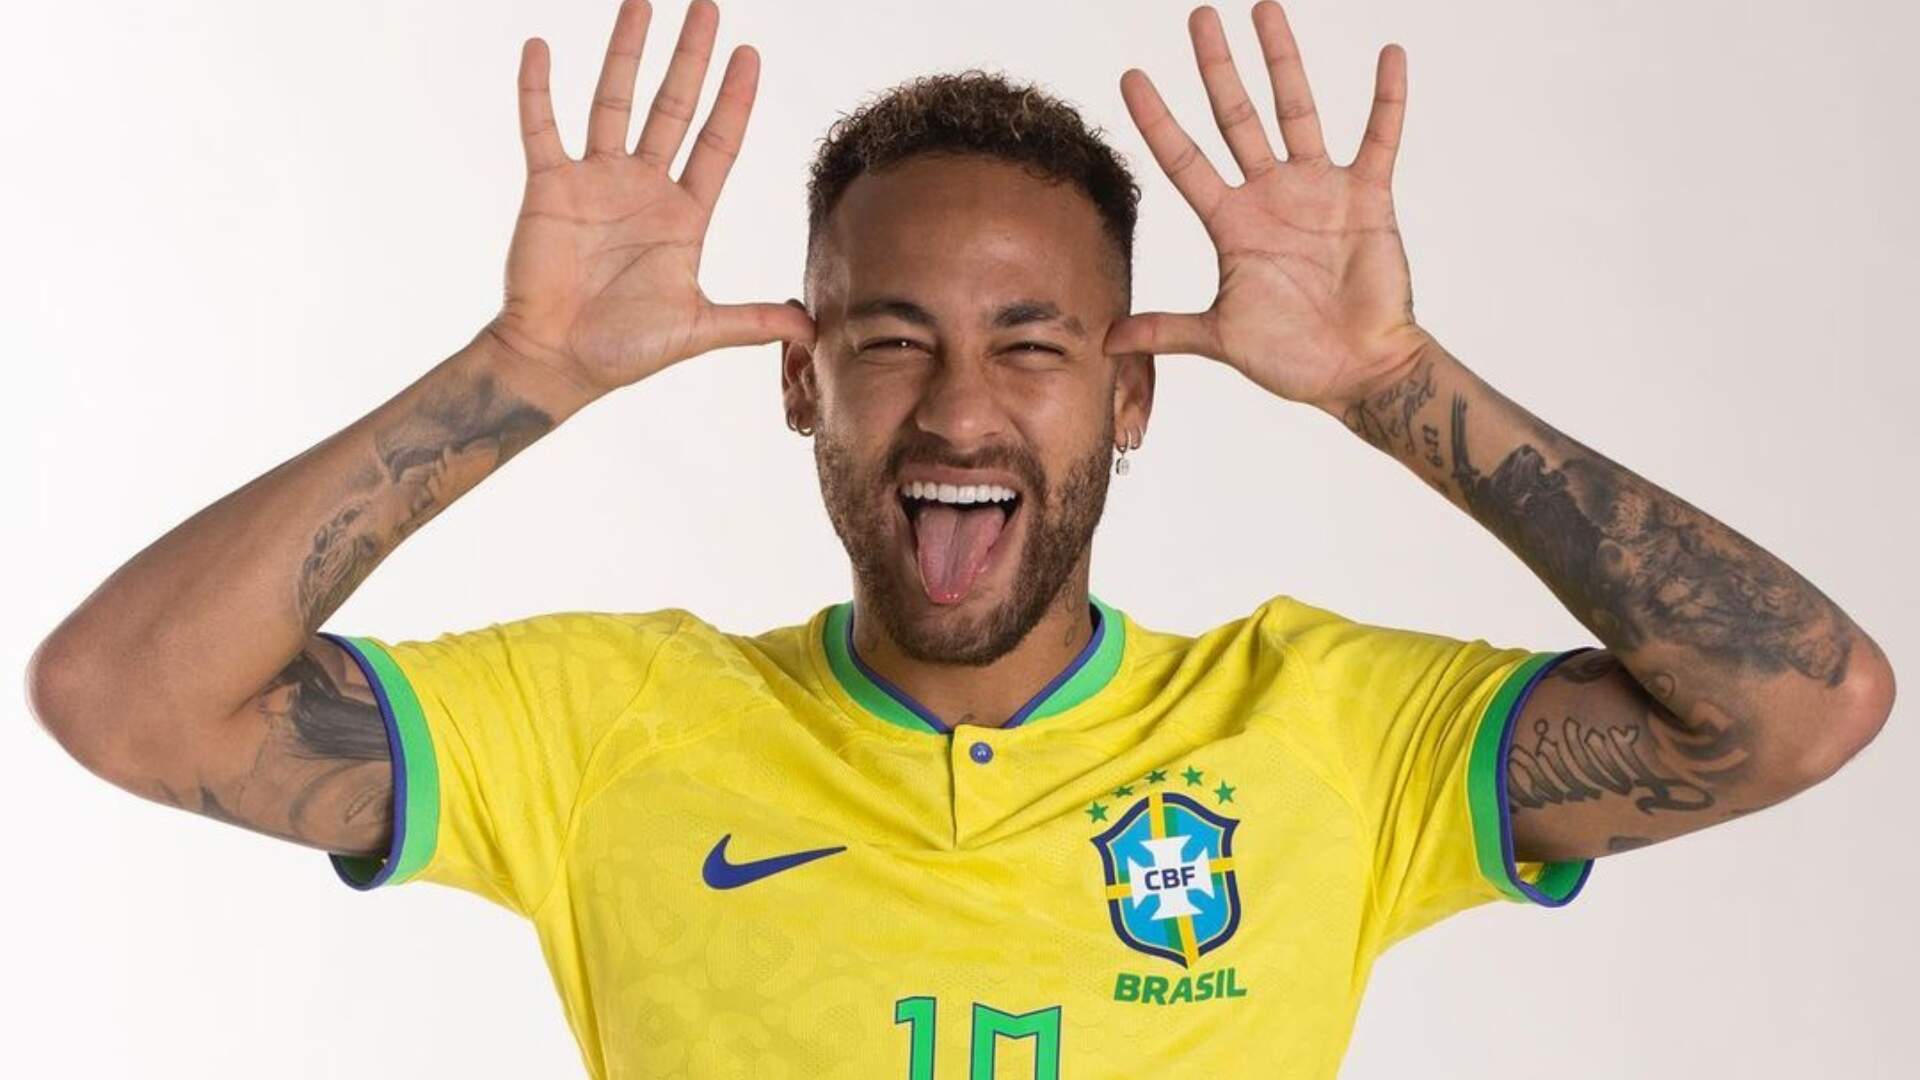 Neymar J. é um jogador de futebol brasileiro que atua como atacante, ele jogou no Santos F.C. (2009 - 2013), no F.C. Barcelona (2013 - 2017), atualmente é jogador do Paris Saint-Germain F.C.. 